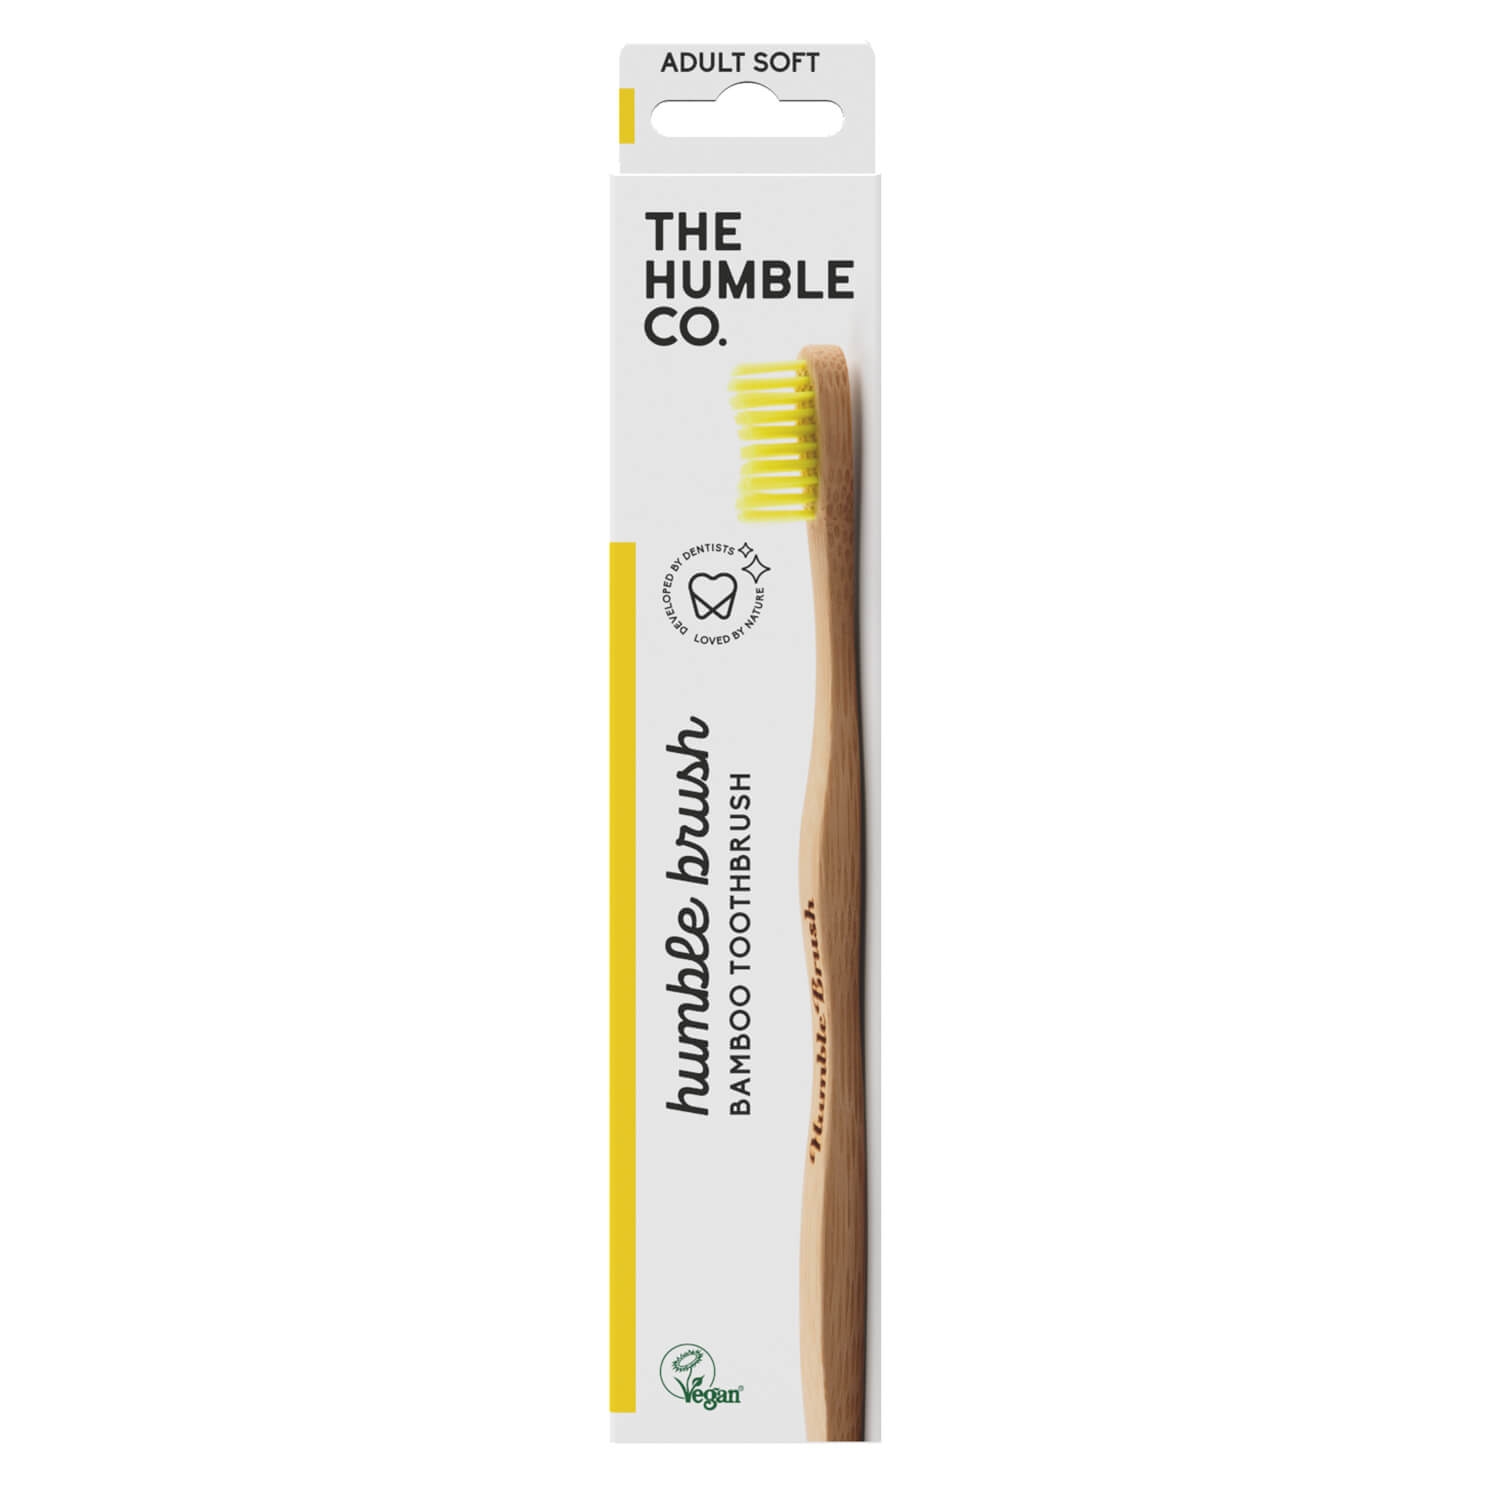 Produktbild von THE HUMBLE CO. - Humble Brush Zahnbürste Erwachsene Gelb